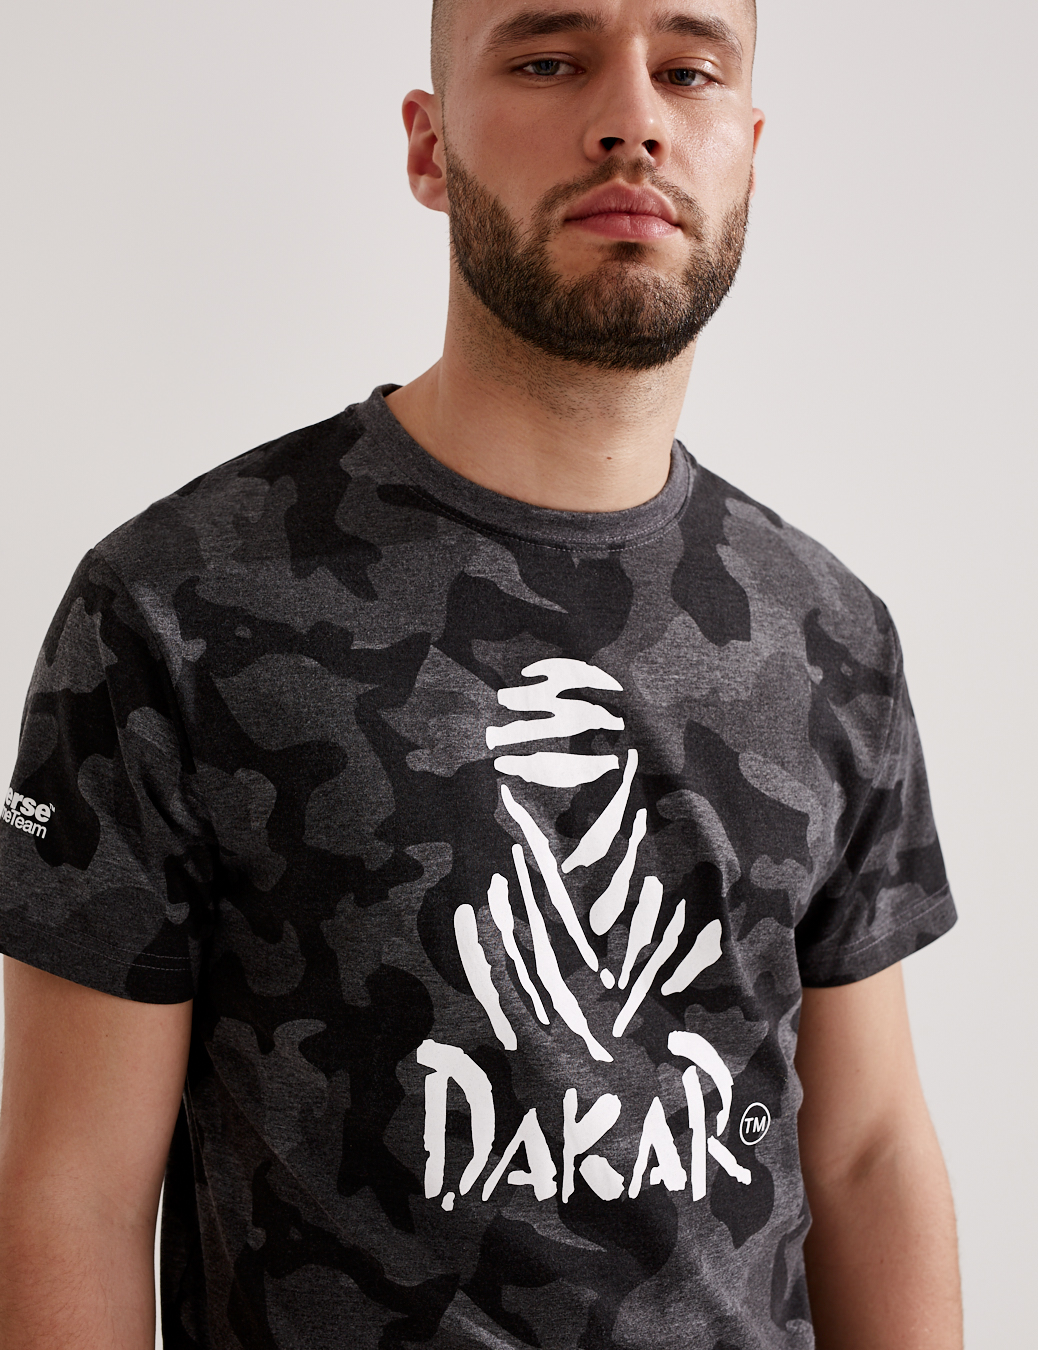 T-Shirt Dakar Logo Camouflage - schwarz